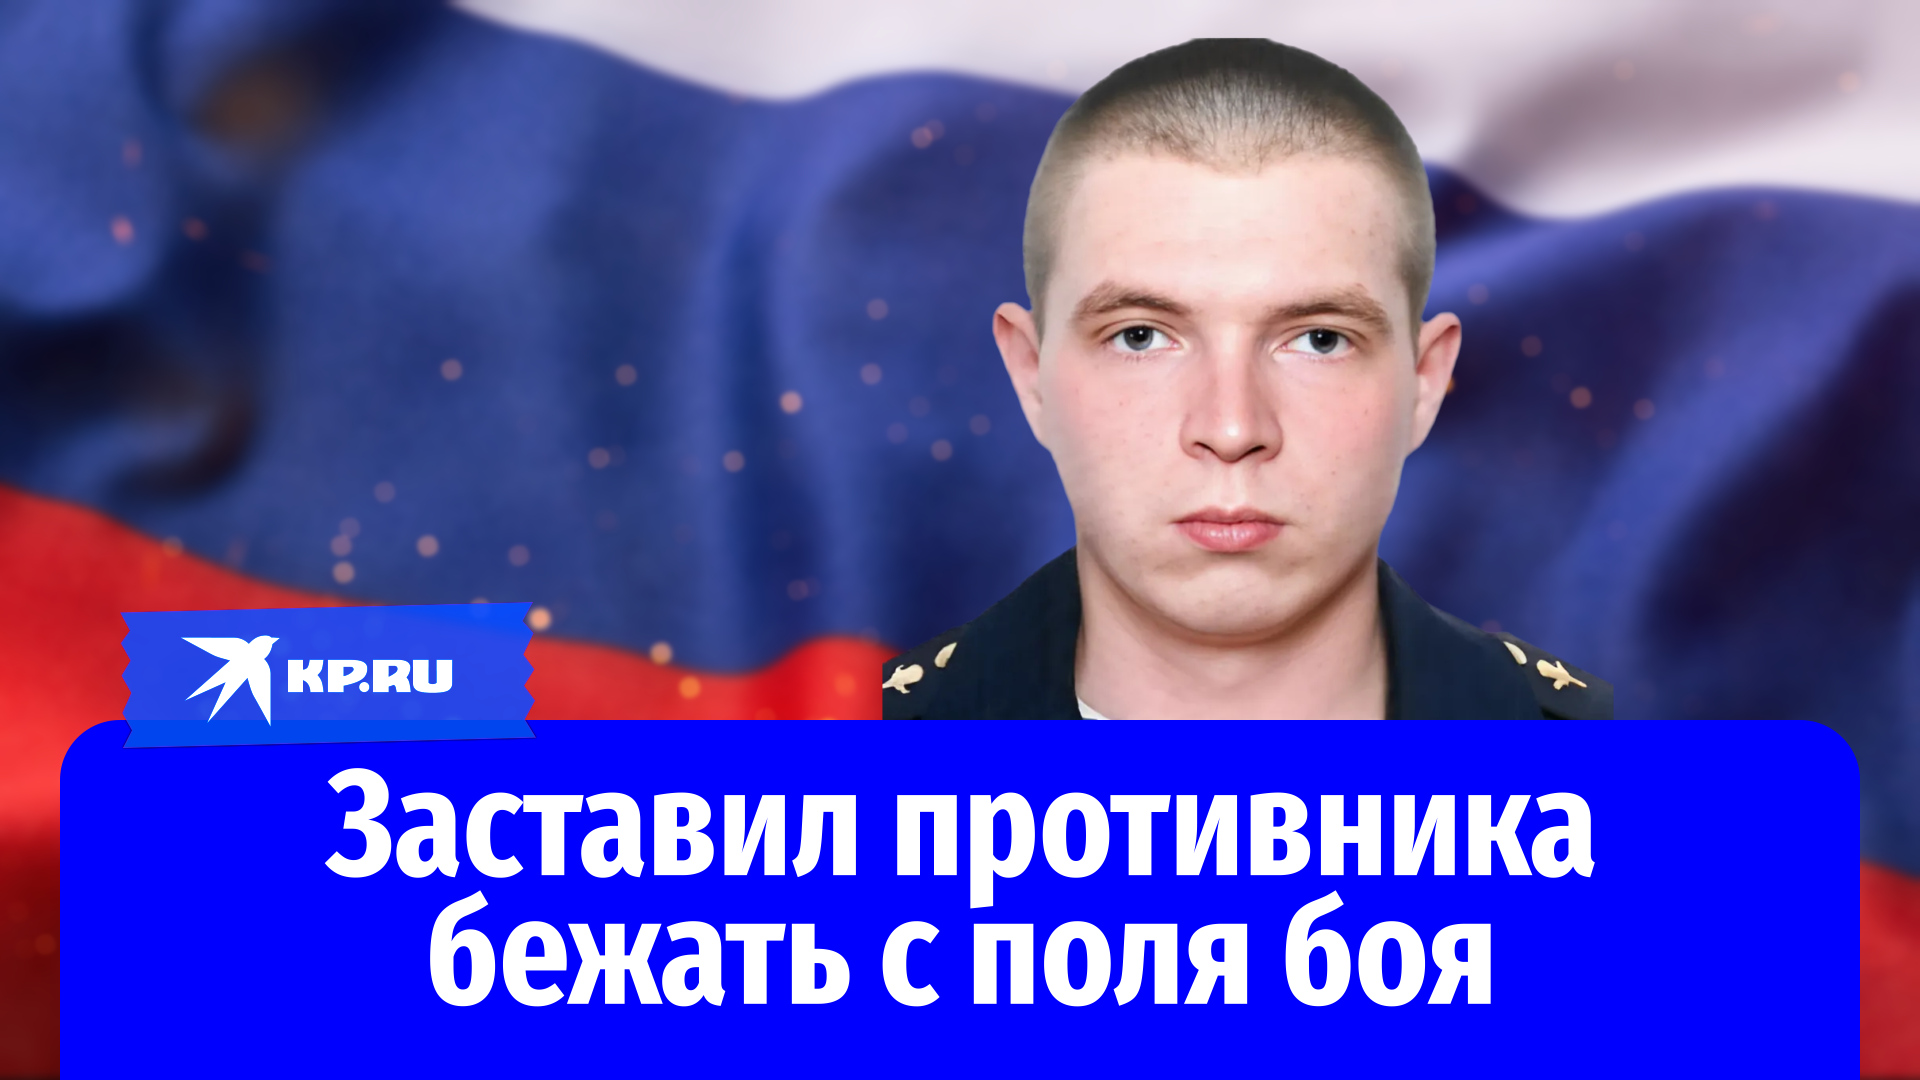 Младший сержант Дмитрий Шайдуров заставил противника бежать с поля боя